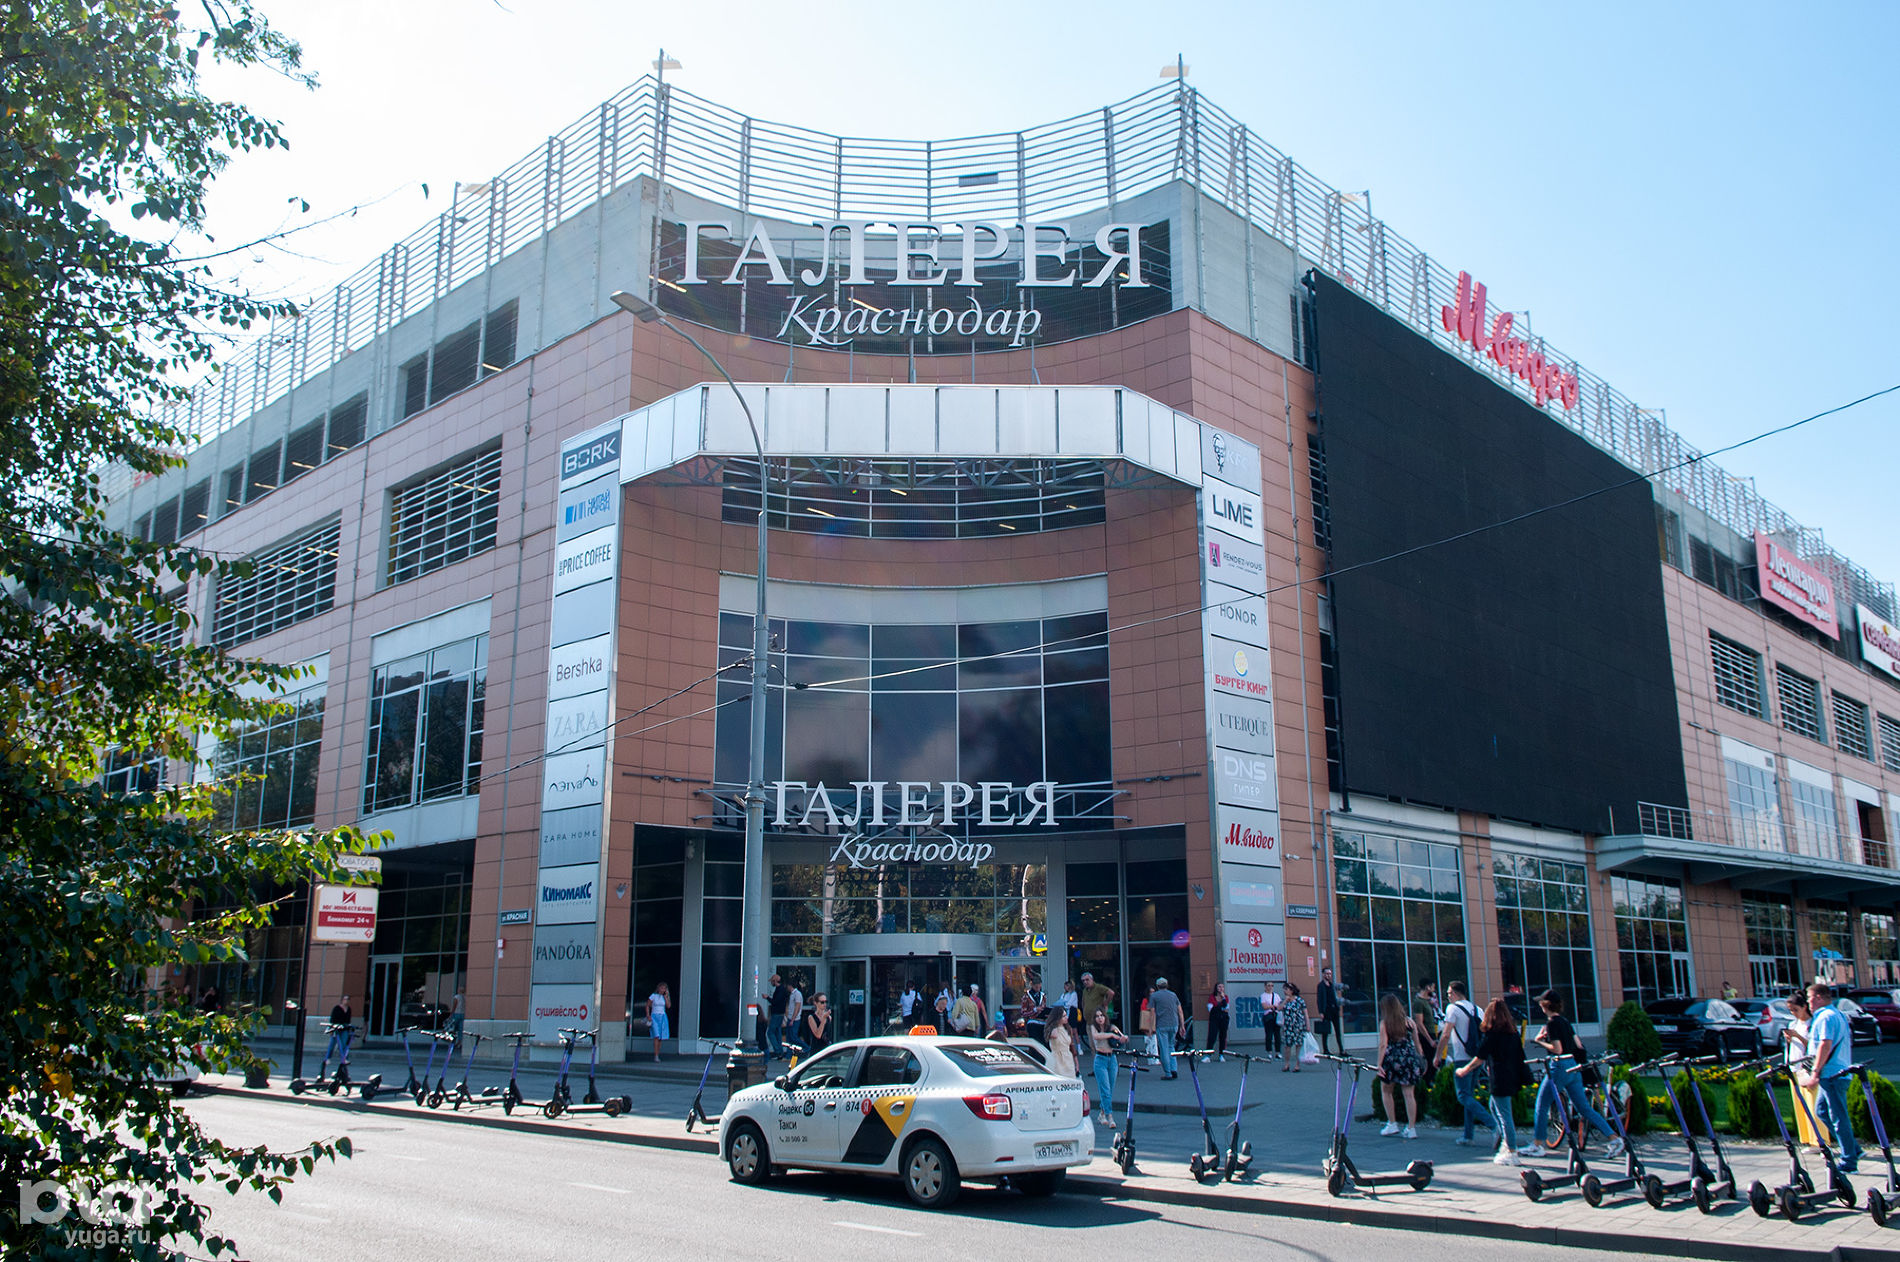 В ТРЦ «Галерея Краснодар» откроется новый кинотеатр. Узнали подробности